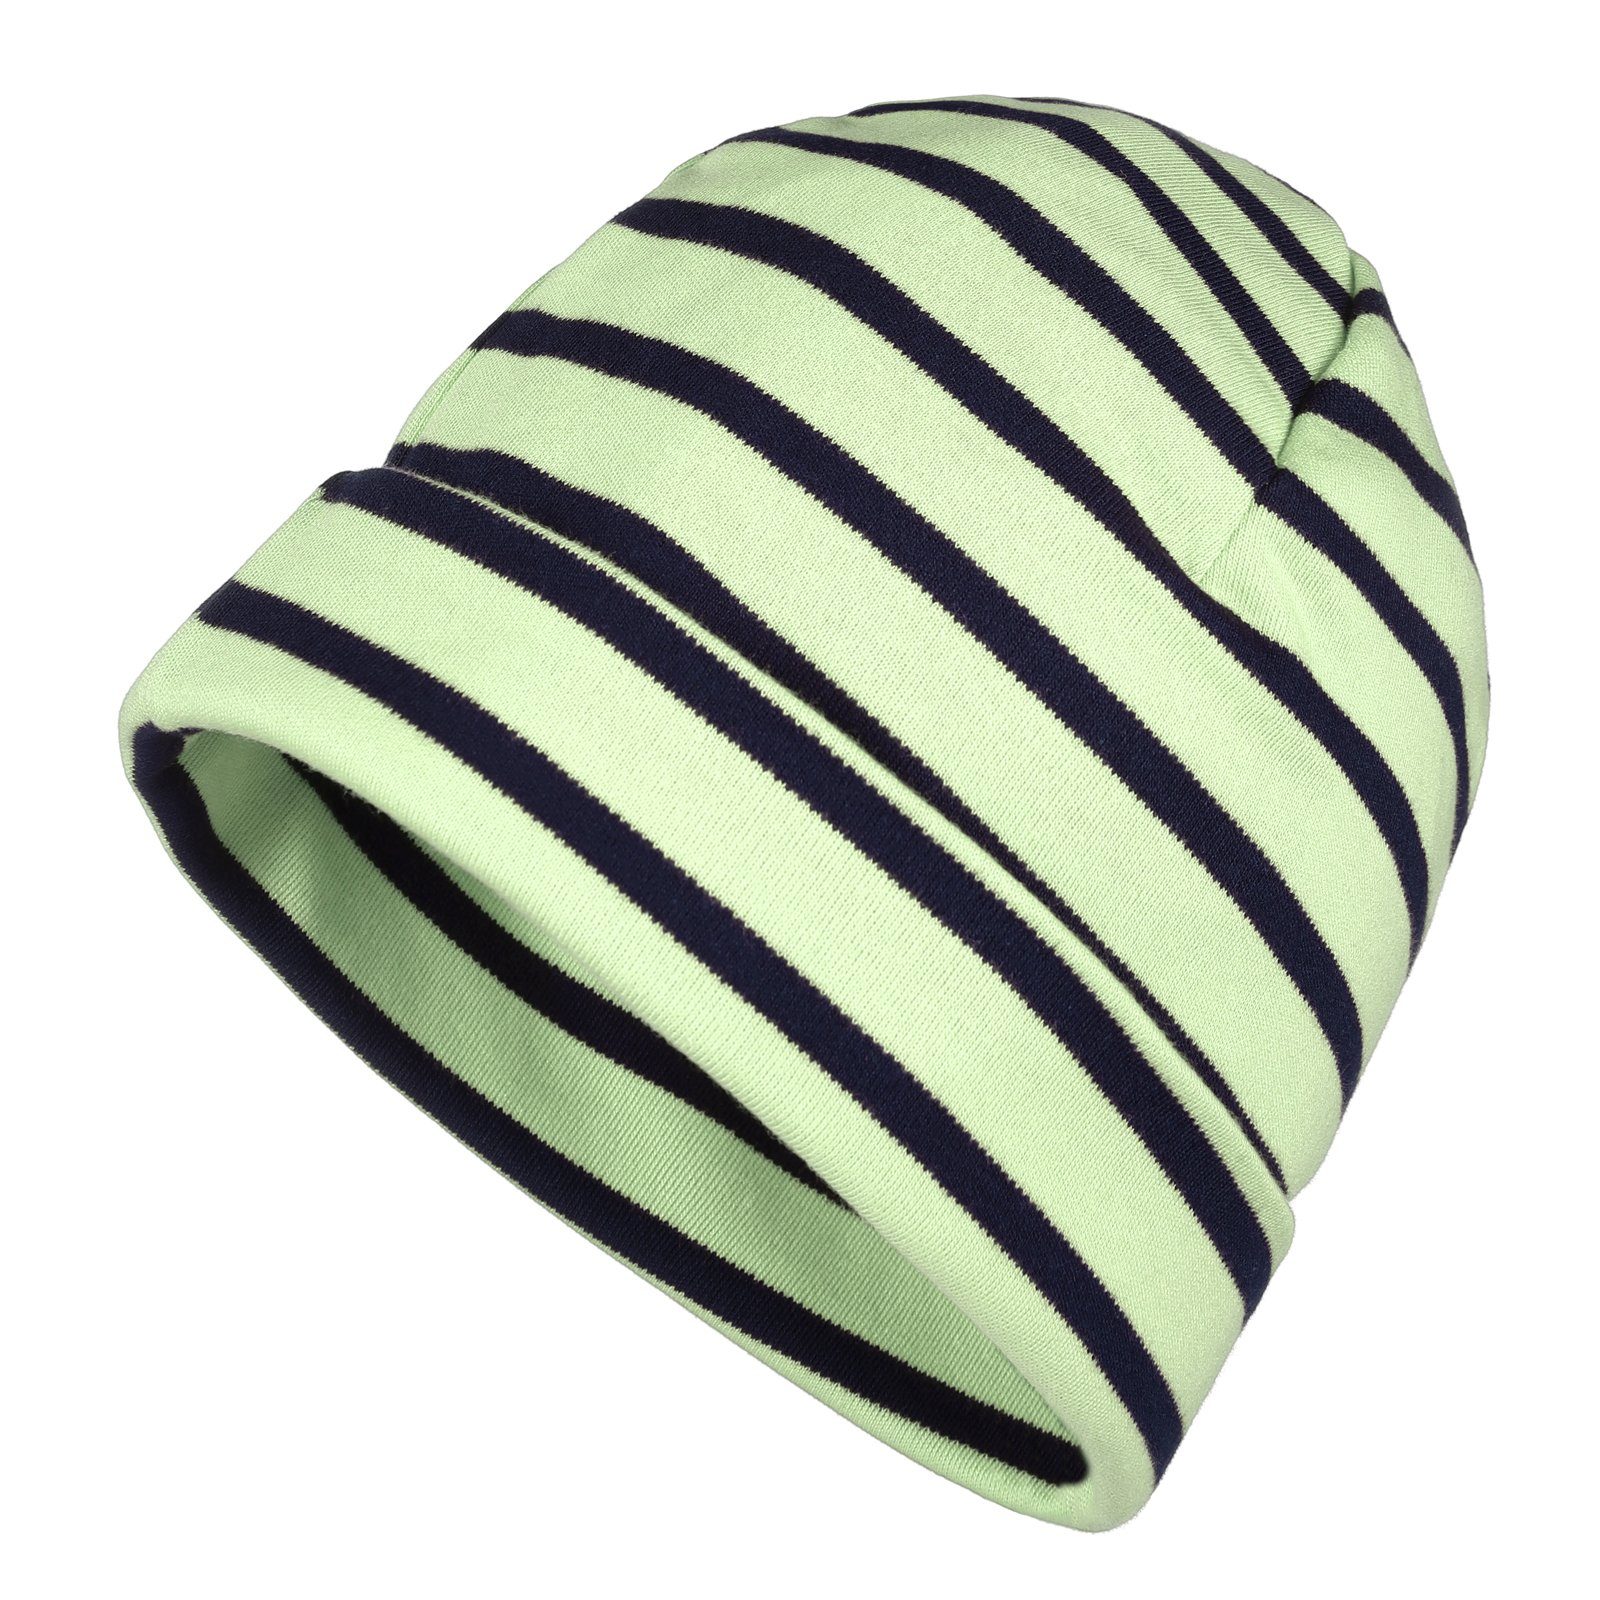 modAS Strickmütze Unisex Mütze Streifen für Kinder & Erwachsene - Ringelmütze Baumwolle (86) lindgrün / marine